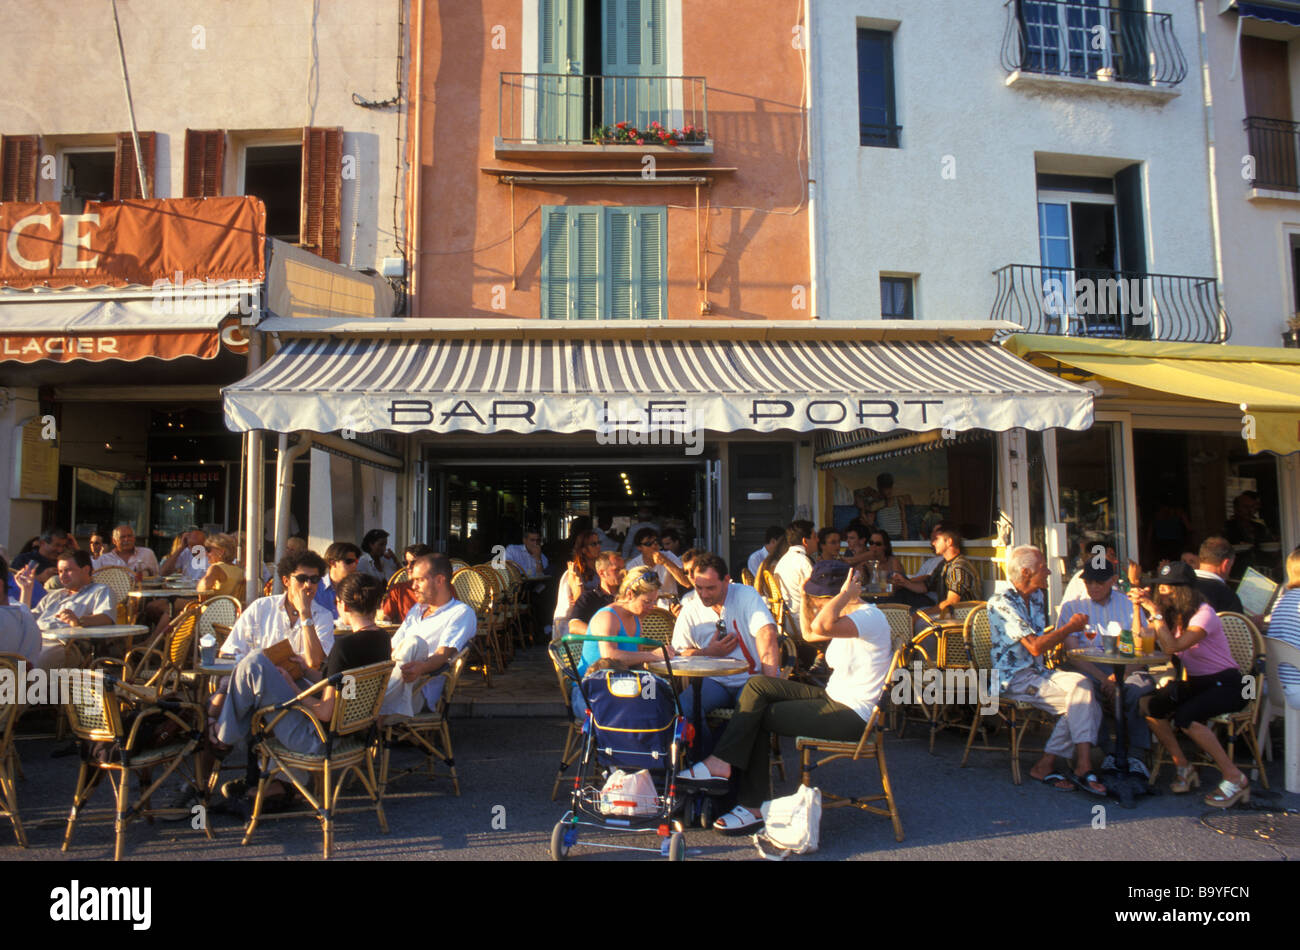 Restaurant, Cafe, Bar le Port, Cassis, Cote d Azur, France Stock Photo -  Alamy